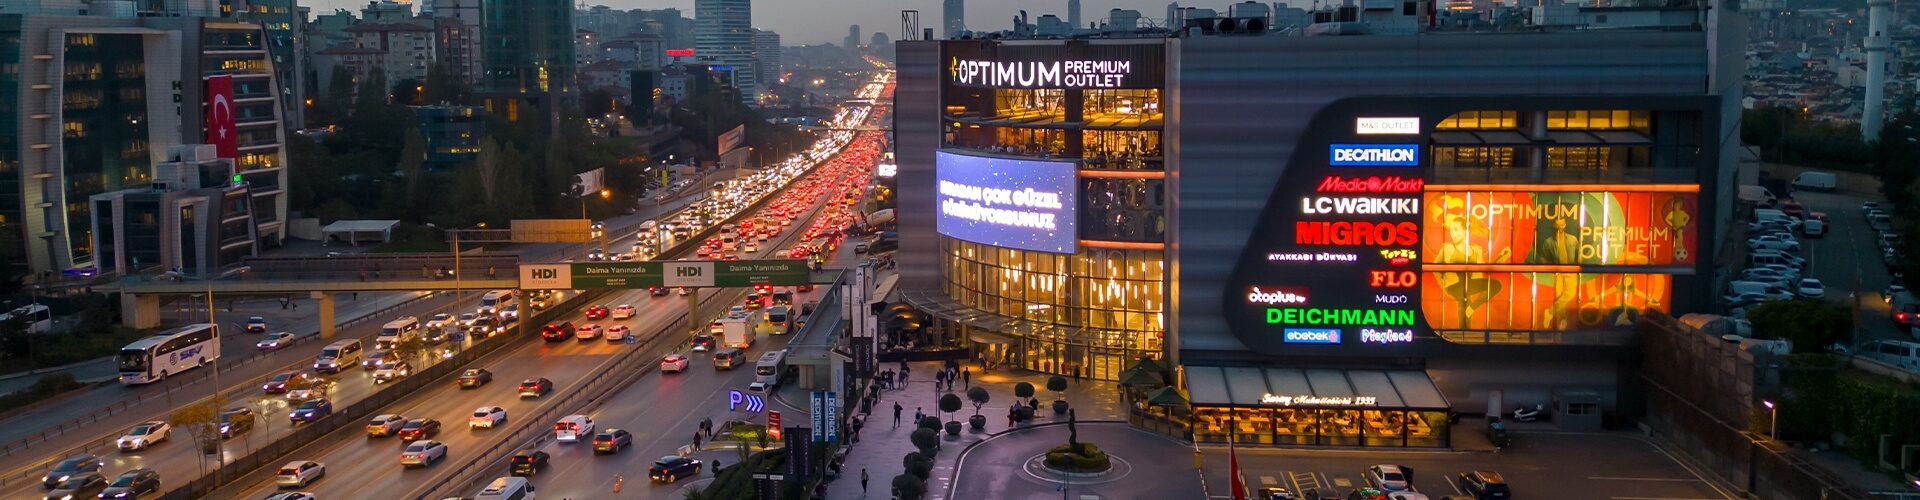 İstanbul Optimum Premium Outlet Alışveriş Merkezi - Hakkımızda